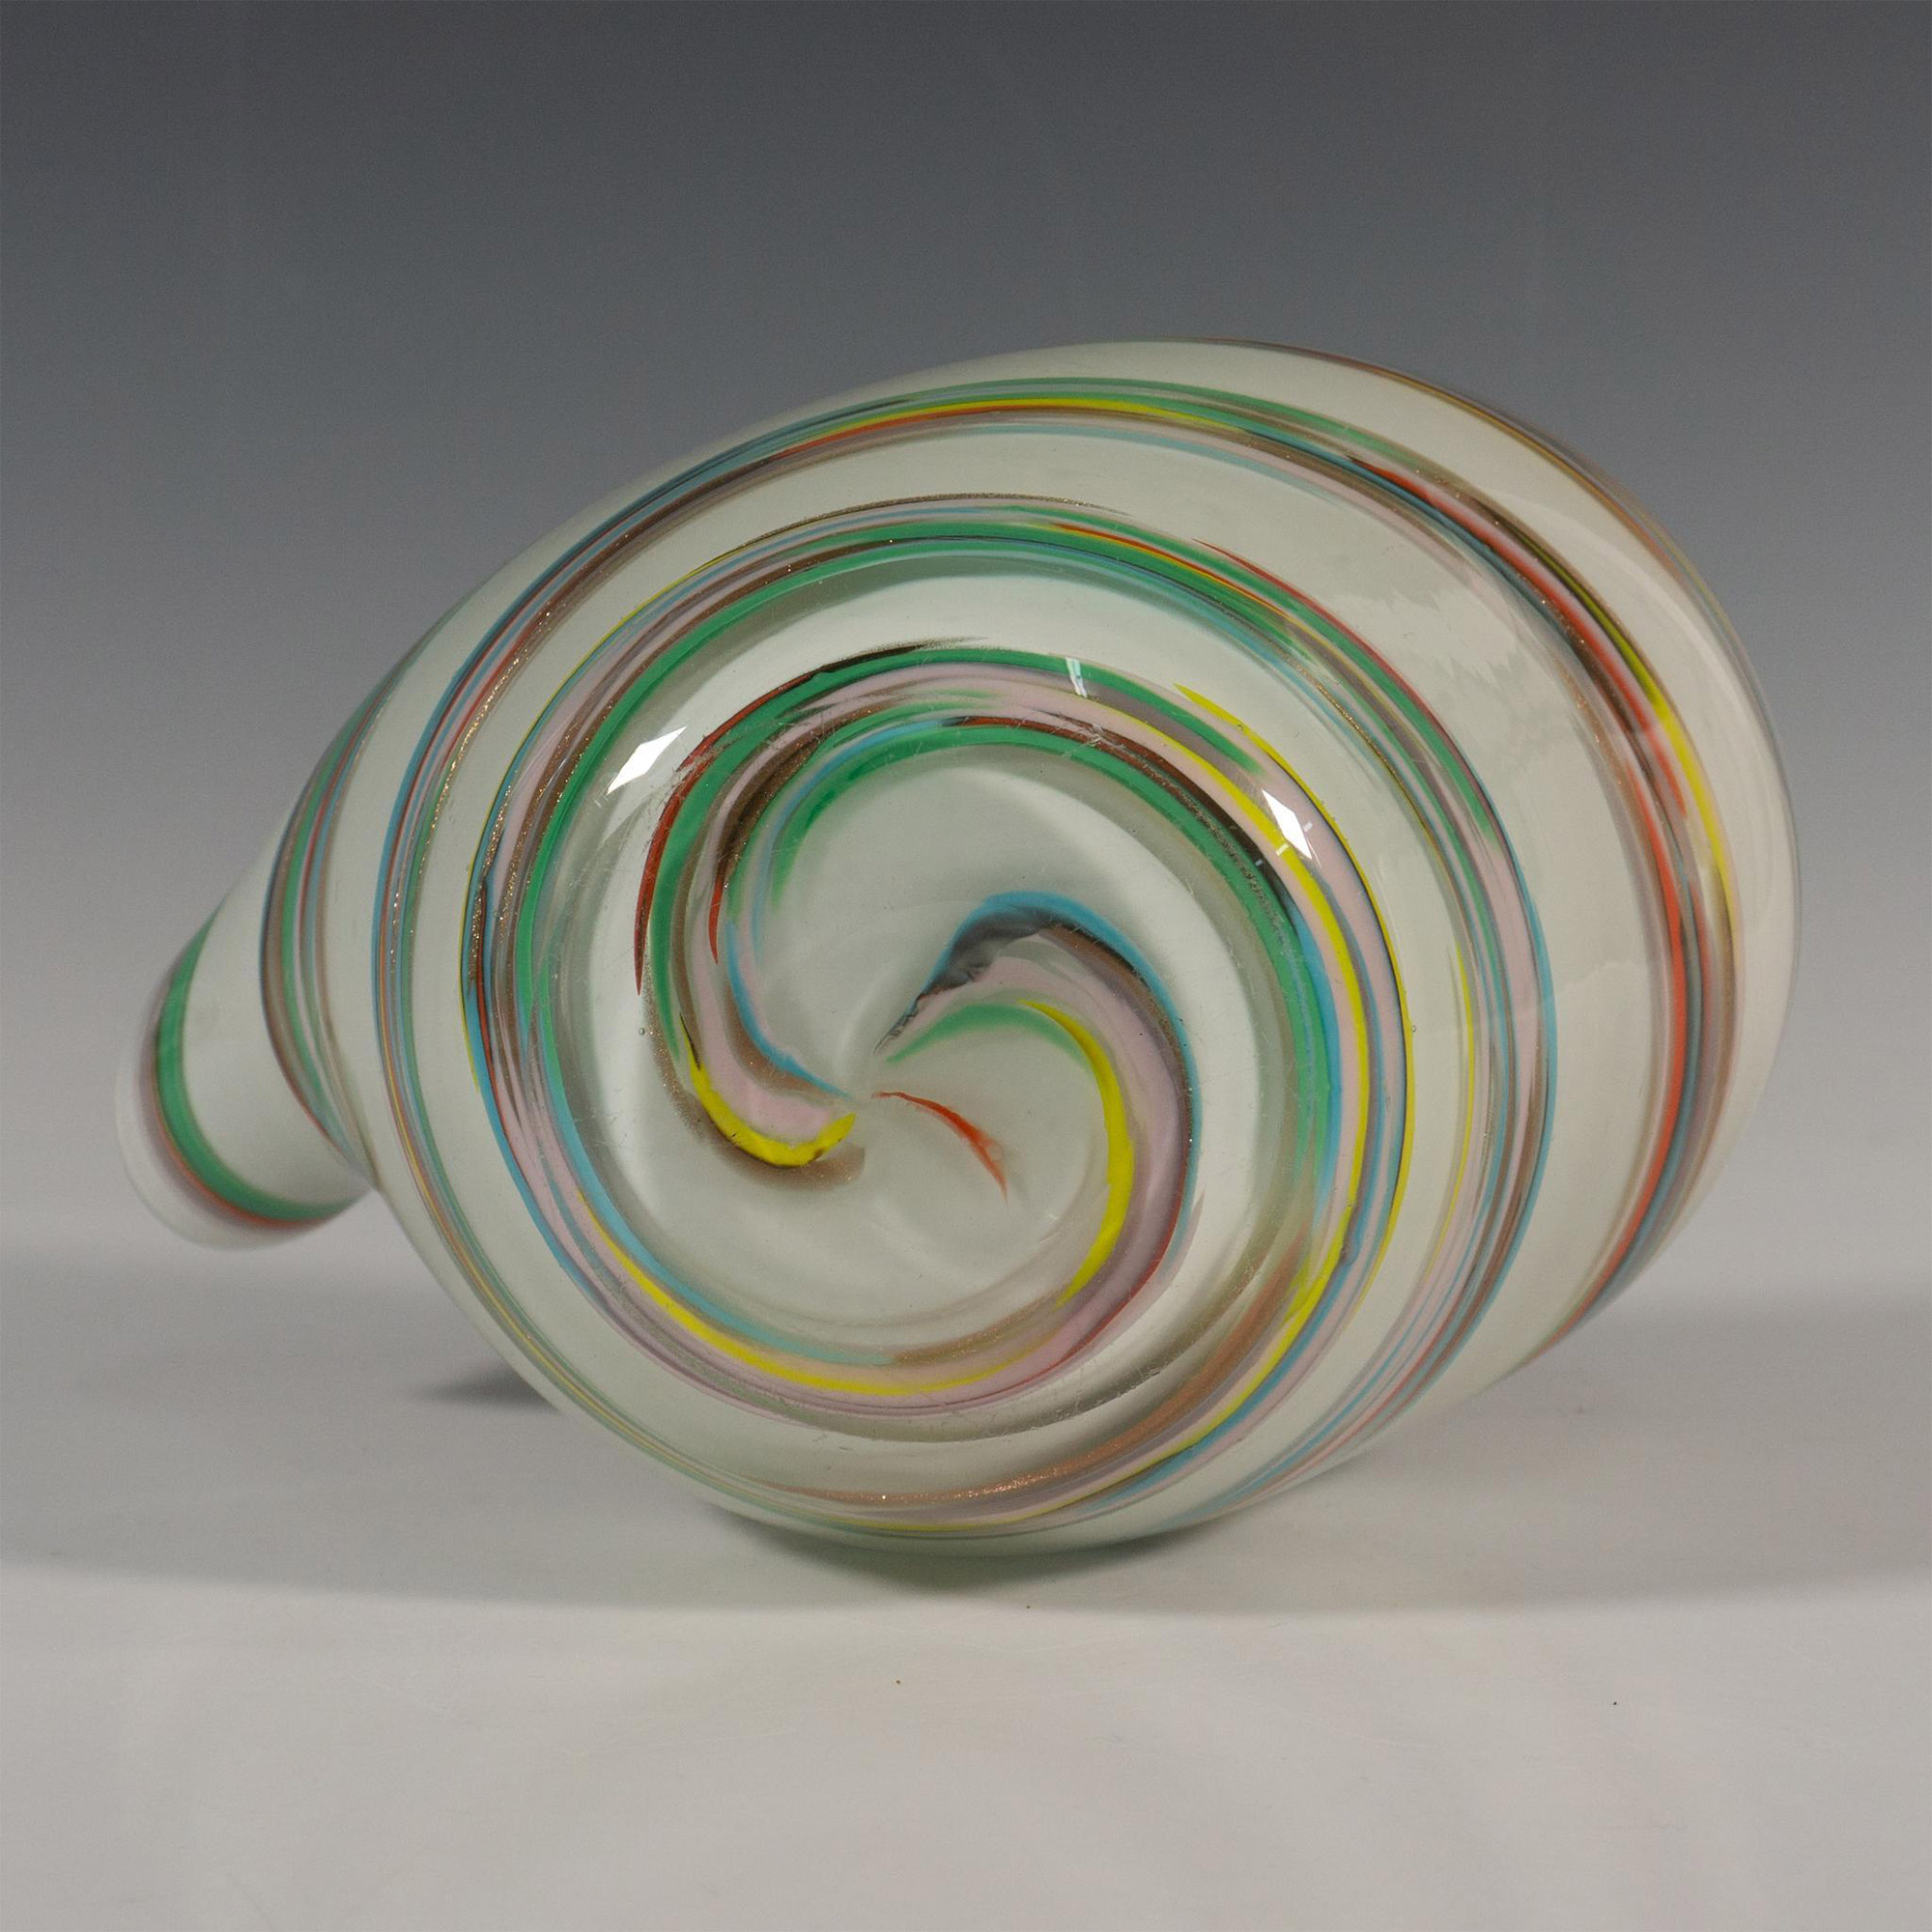 Vintage Hand Blown Curvilinear Glass Vase, Spiral Design - Image 4 of 4